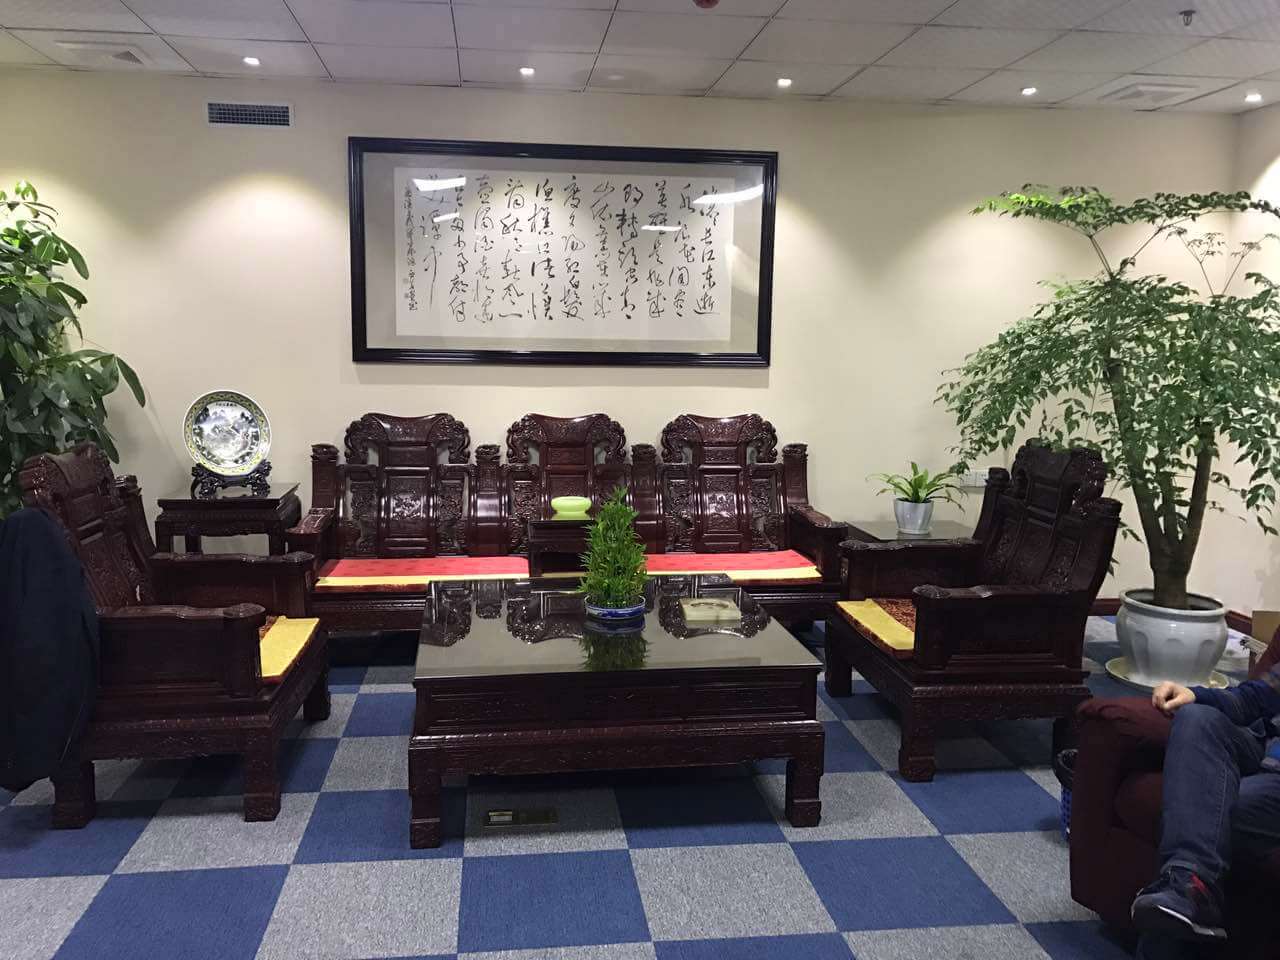 浩毅资产管理办公室风采展示-上海炫园企业登记代理有限公司